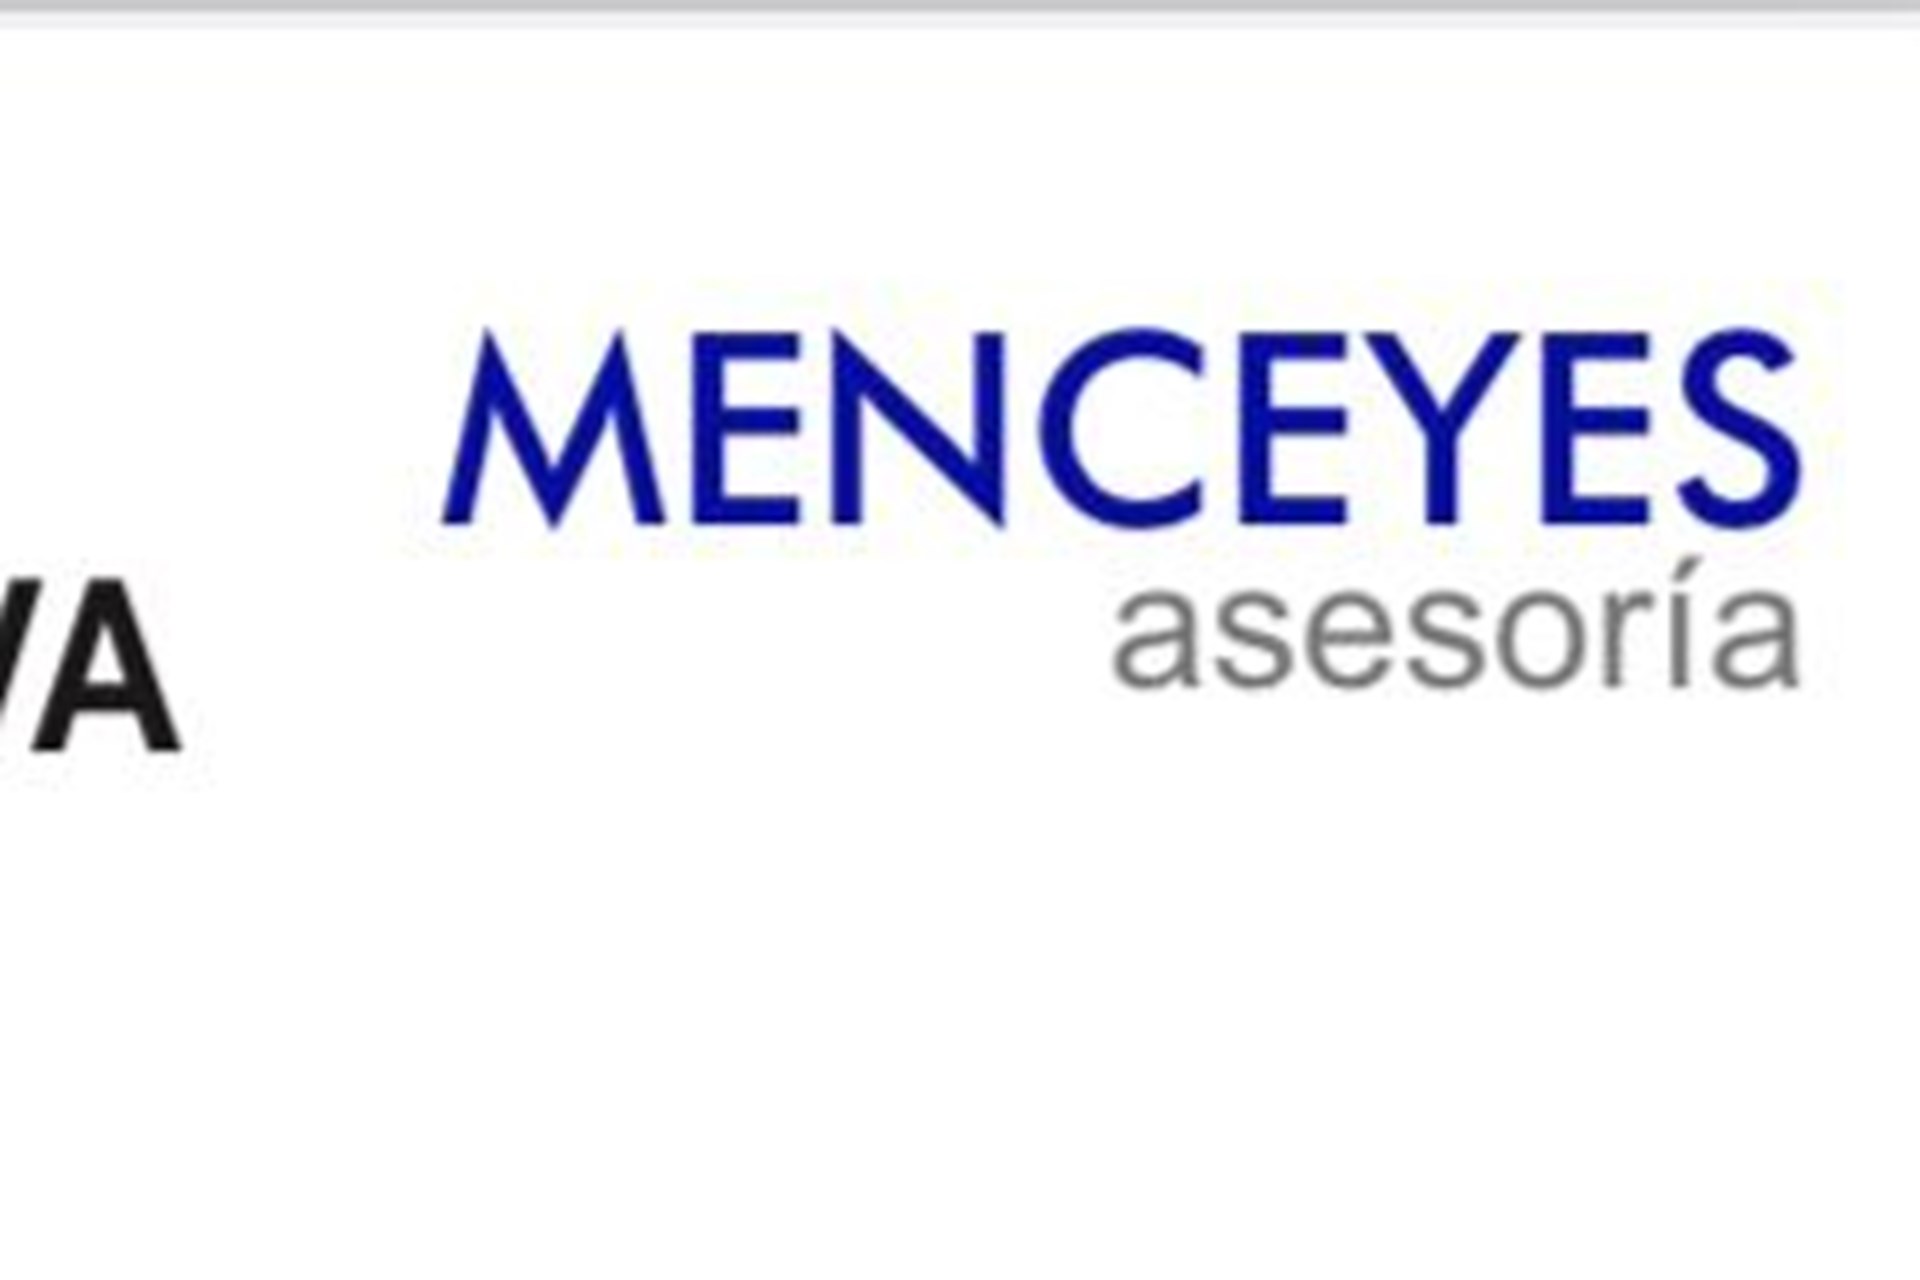 Acuerdo de colaboración con Asesoria Menceyes